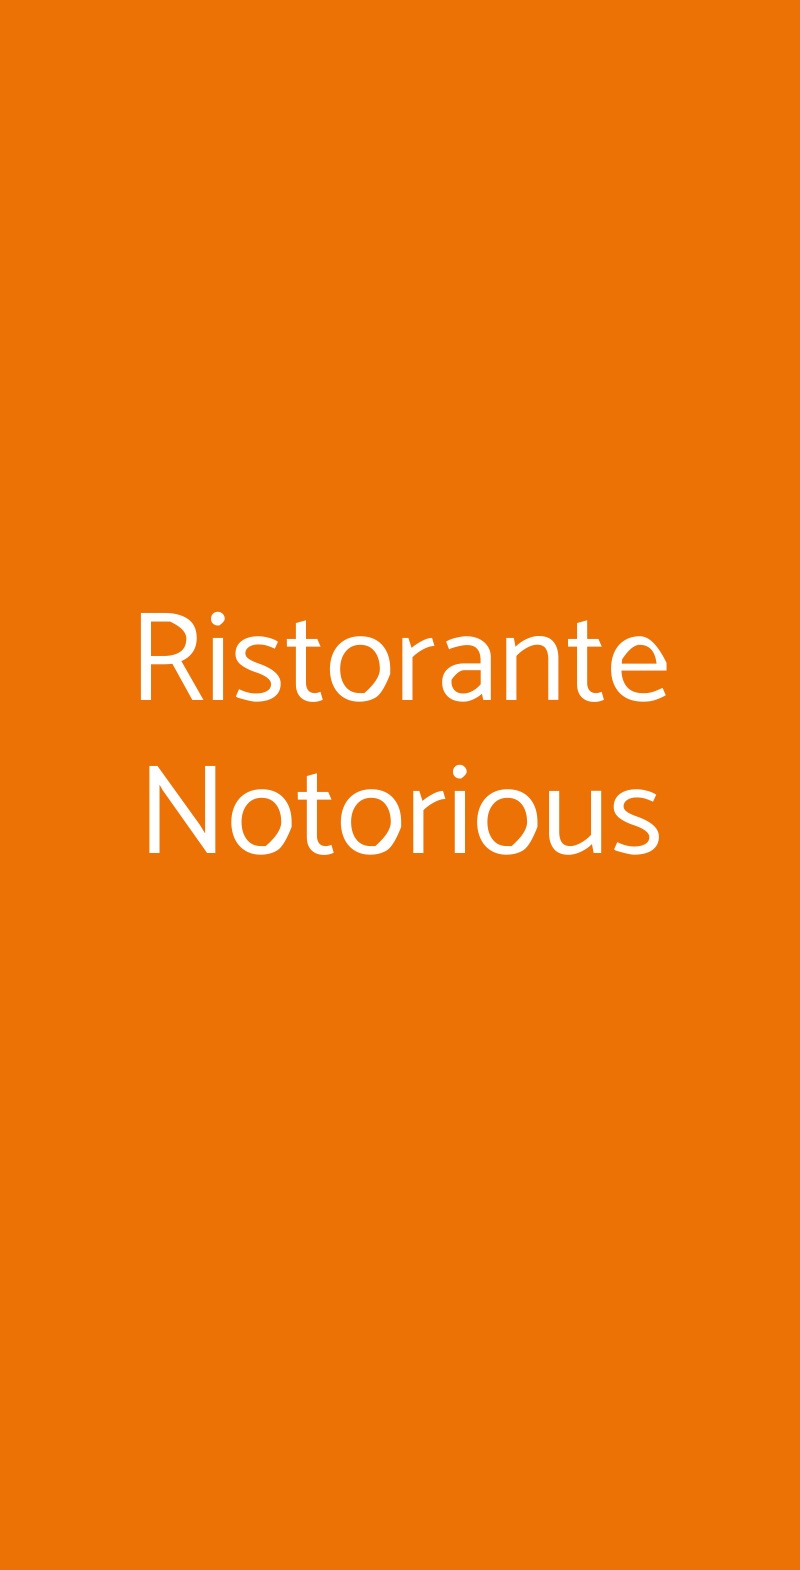 Ristorante Notorious Roma menù 1 pagina